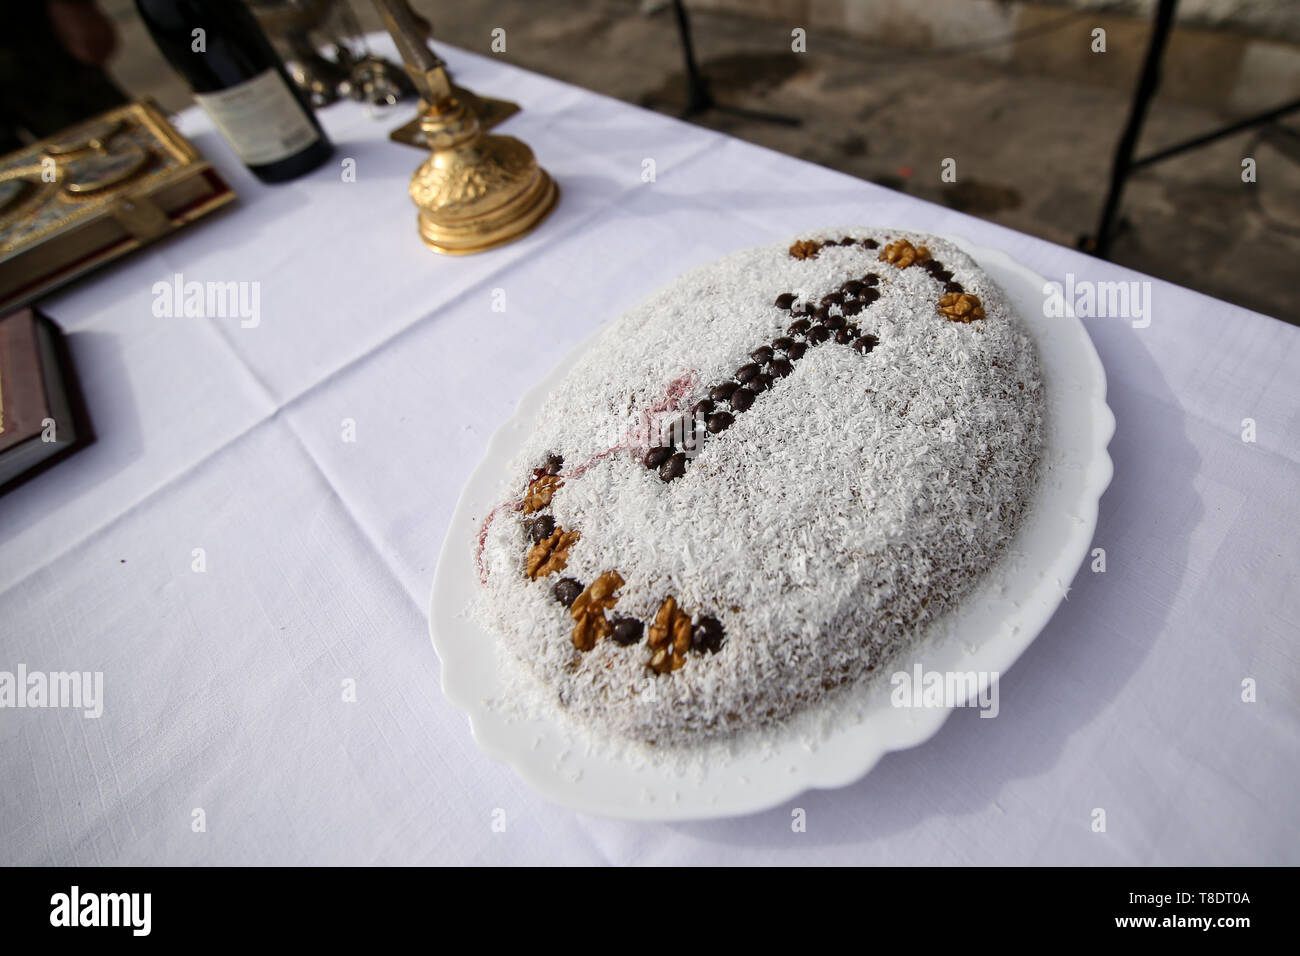 Un piatto pieno con coliva, rumeno tradizionale torta fatta dal bollito di grano utilizzato a cerimonie funebri, decorata con una religiosa cristiana cross. Foto Stock